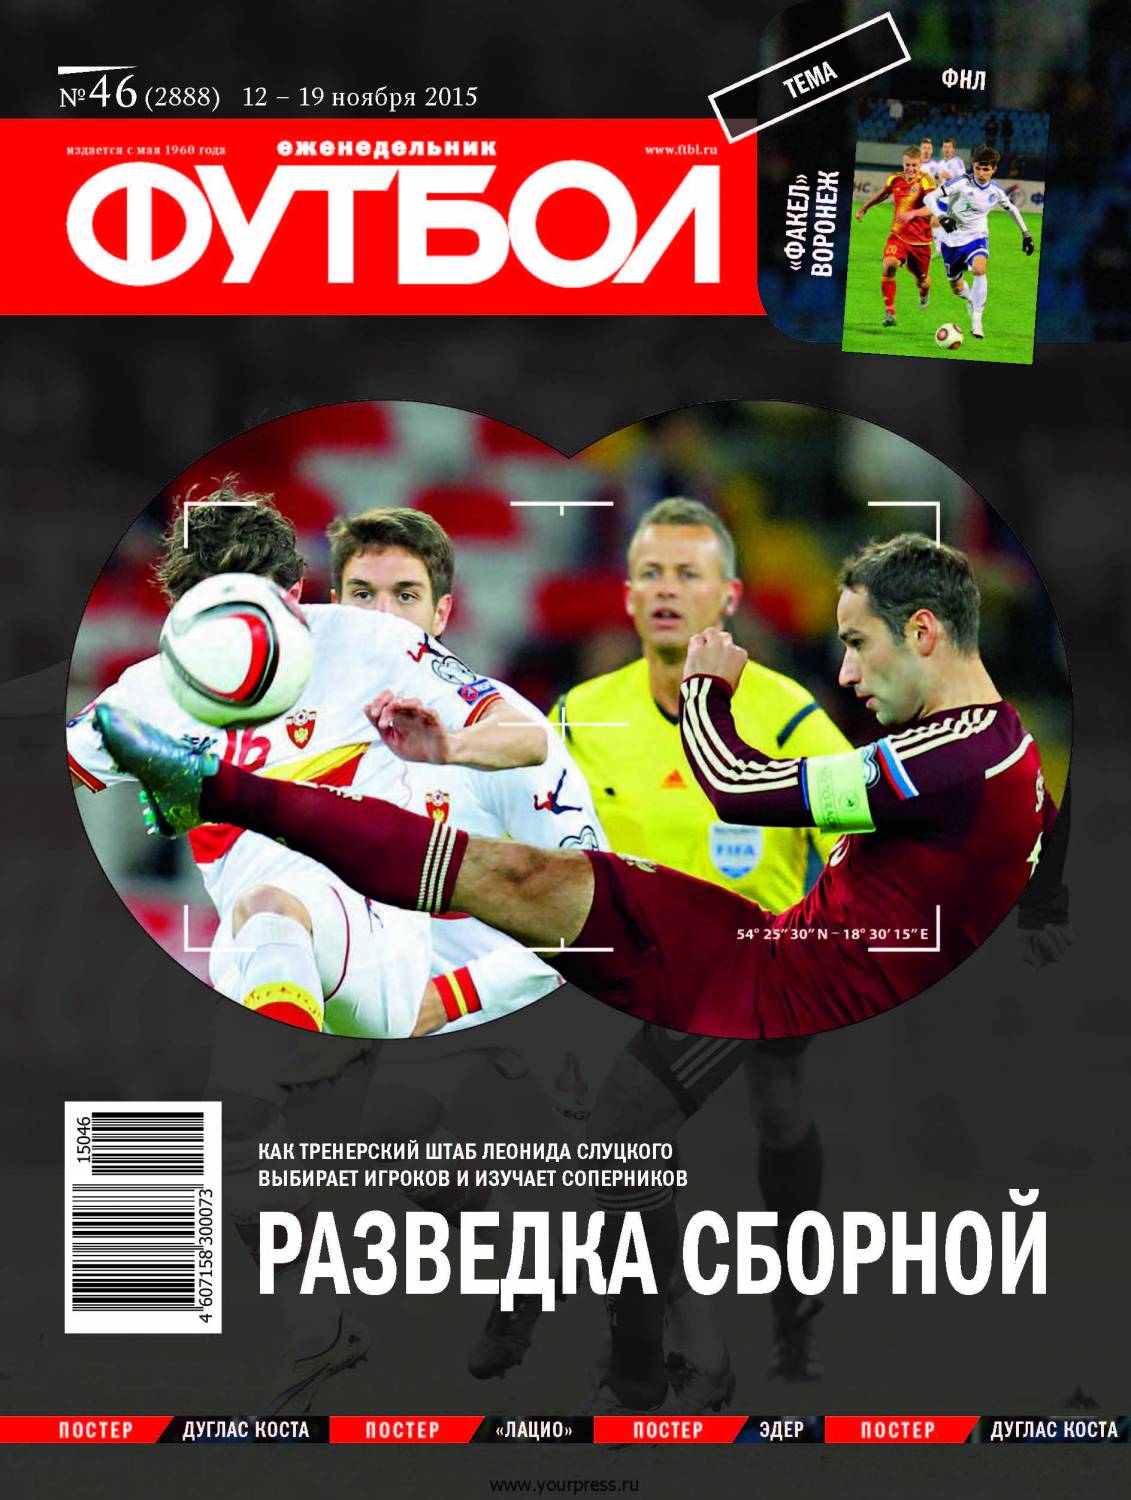 /other/zhurnaly/futbol_rossija/zhurnal_futbol_rossija_vypusk_ot_12_11_15/62-1-0-4214